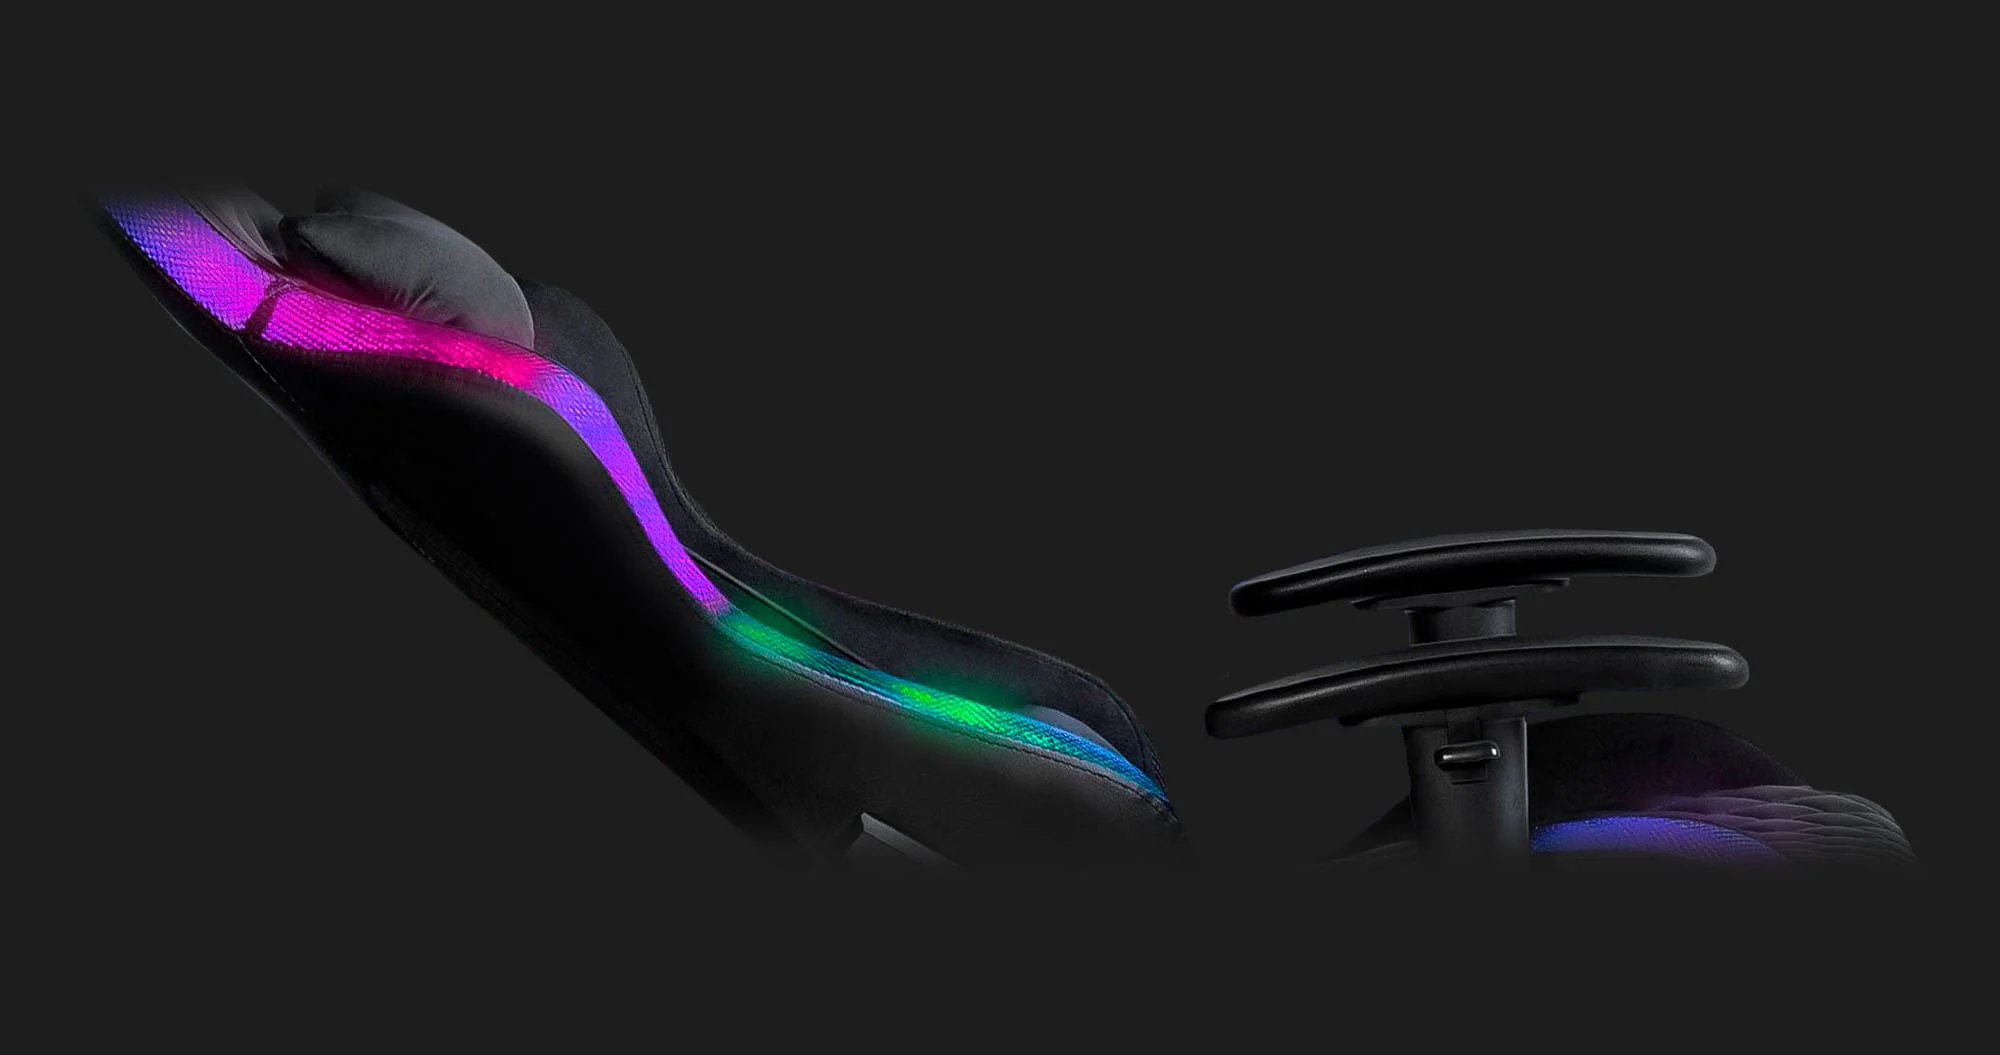 Кресло для геймеров HATOR Darkside RGB (Black)